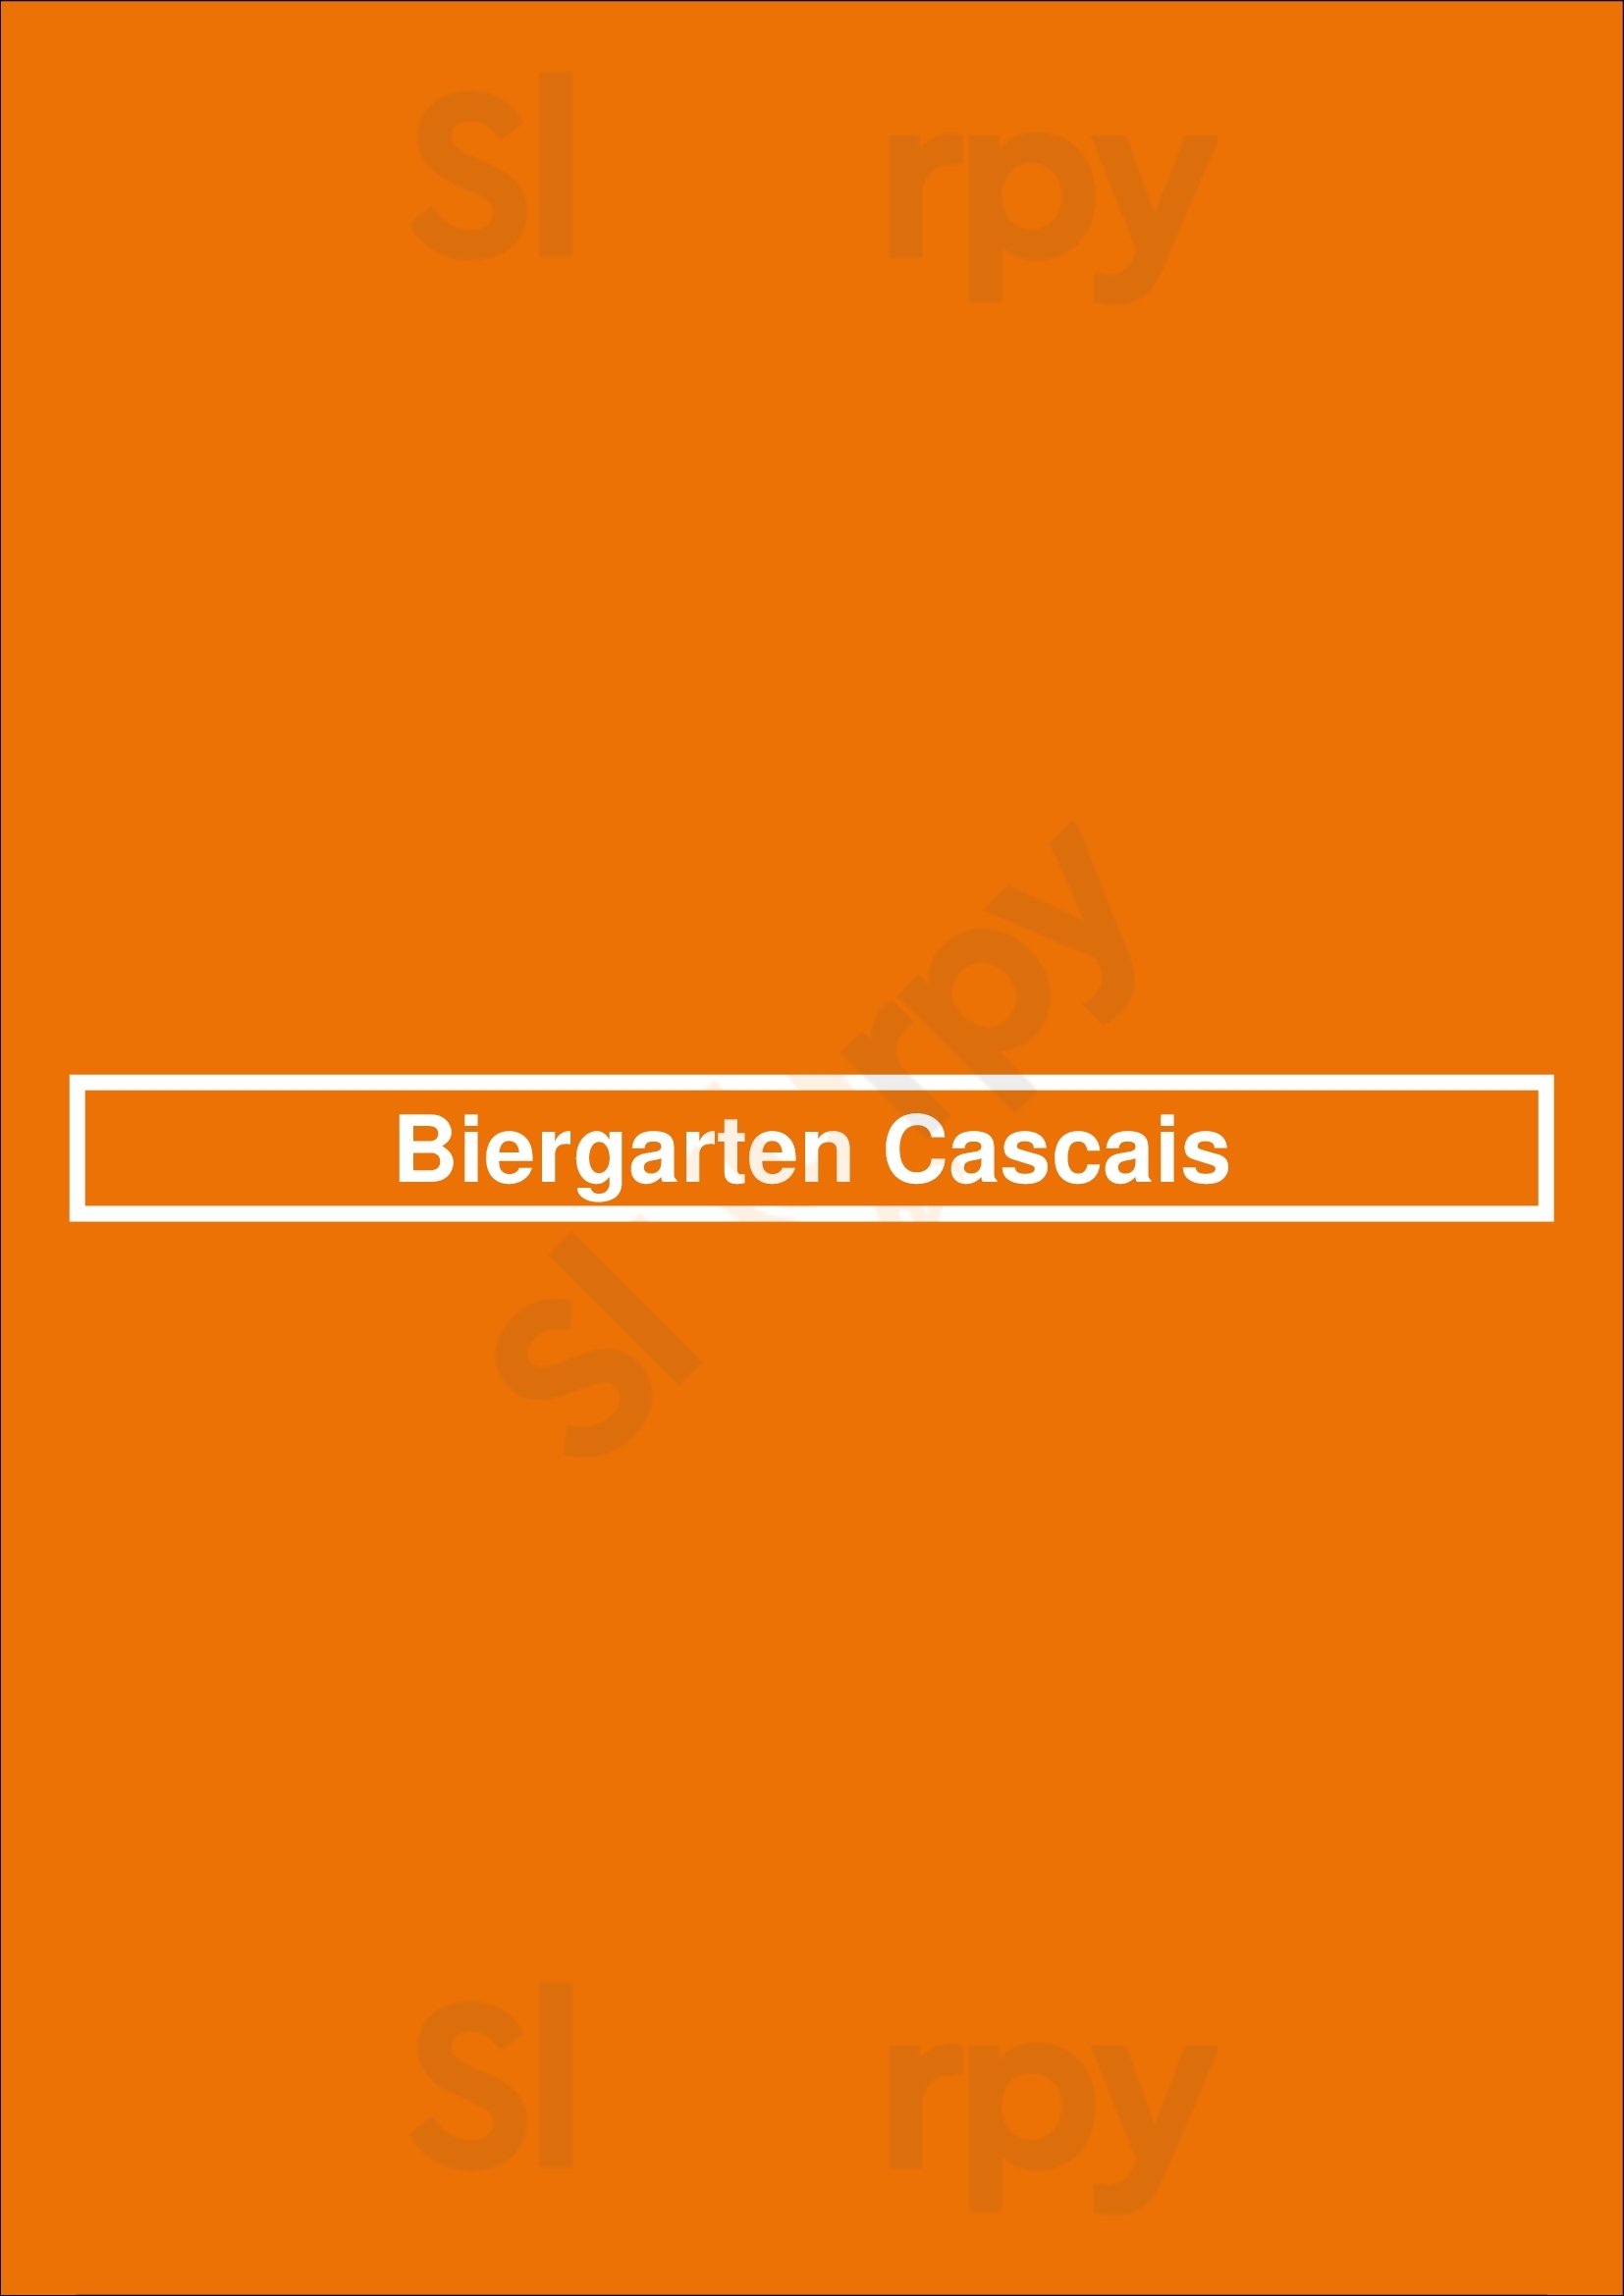 Biergarten Cascais Cascais Menu - 1